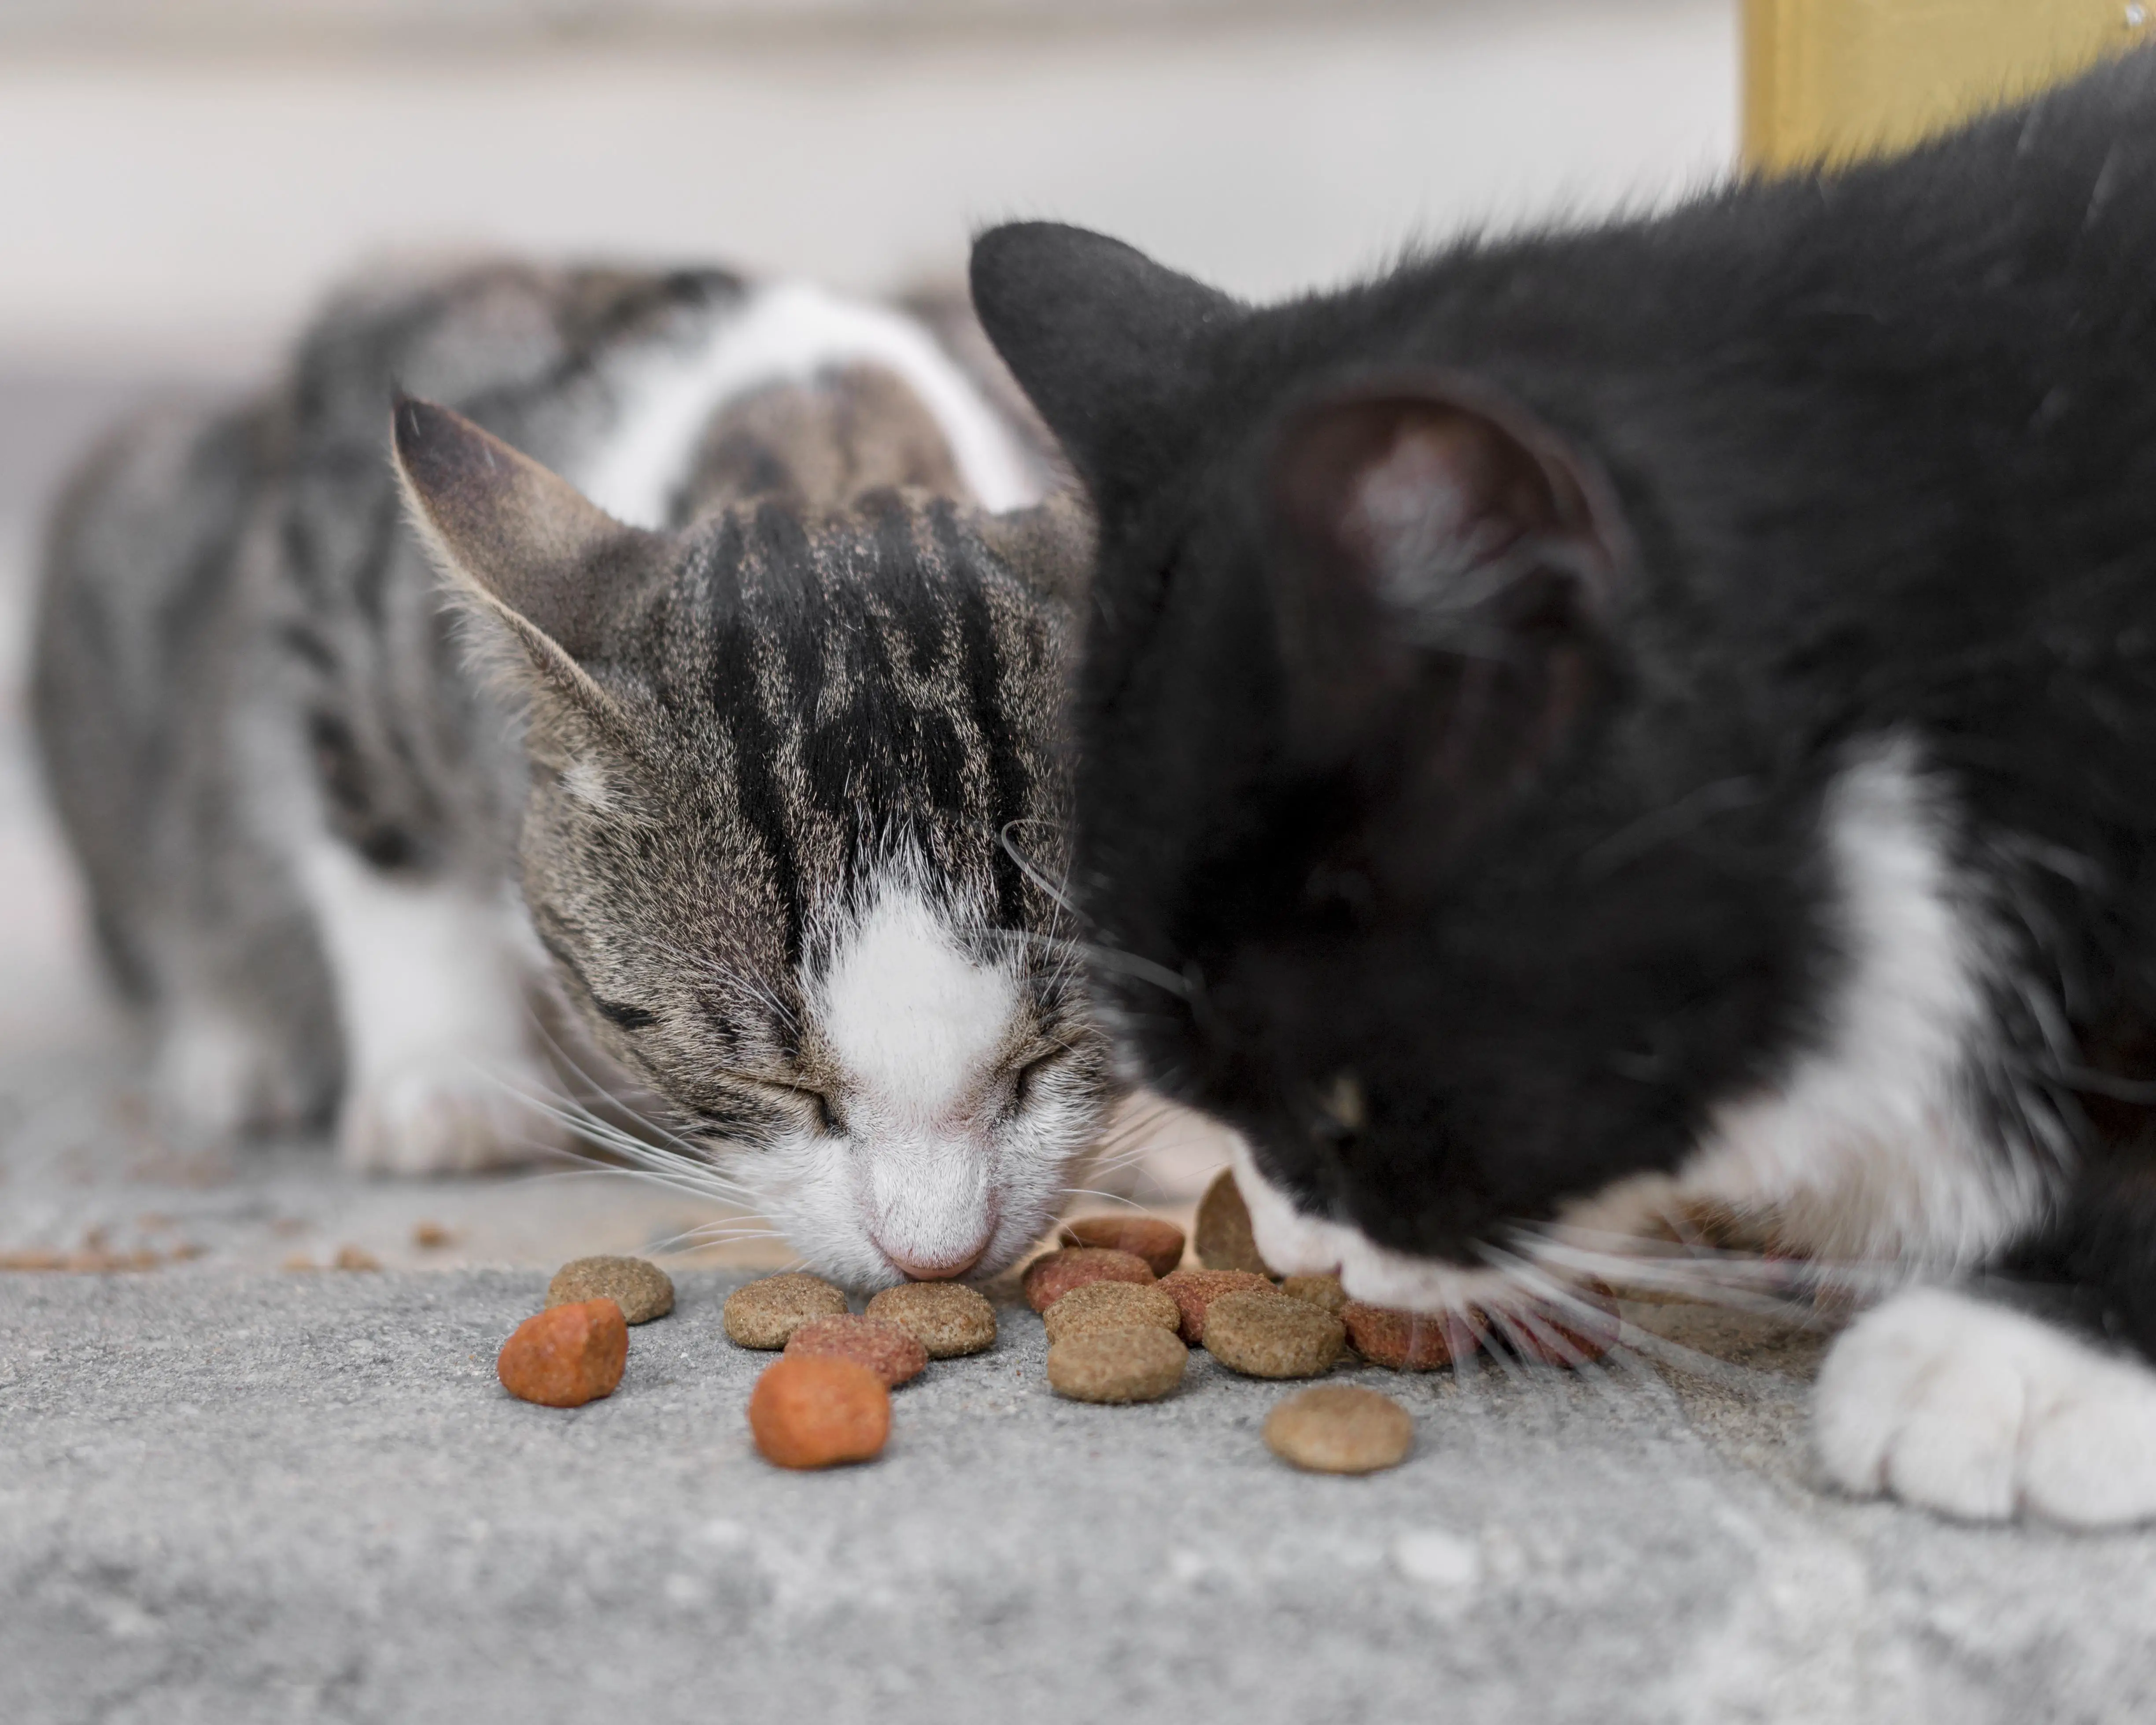 Food Aggression Between Cats